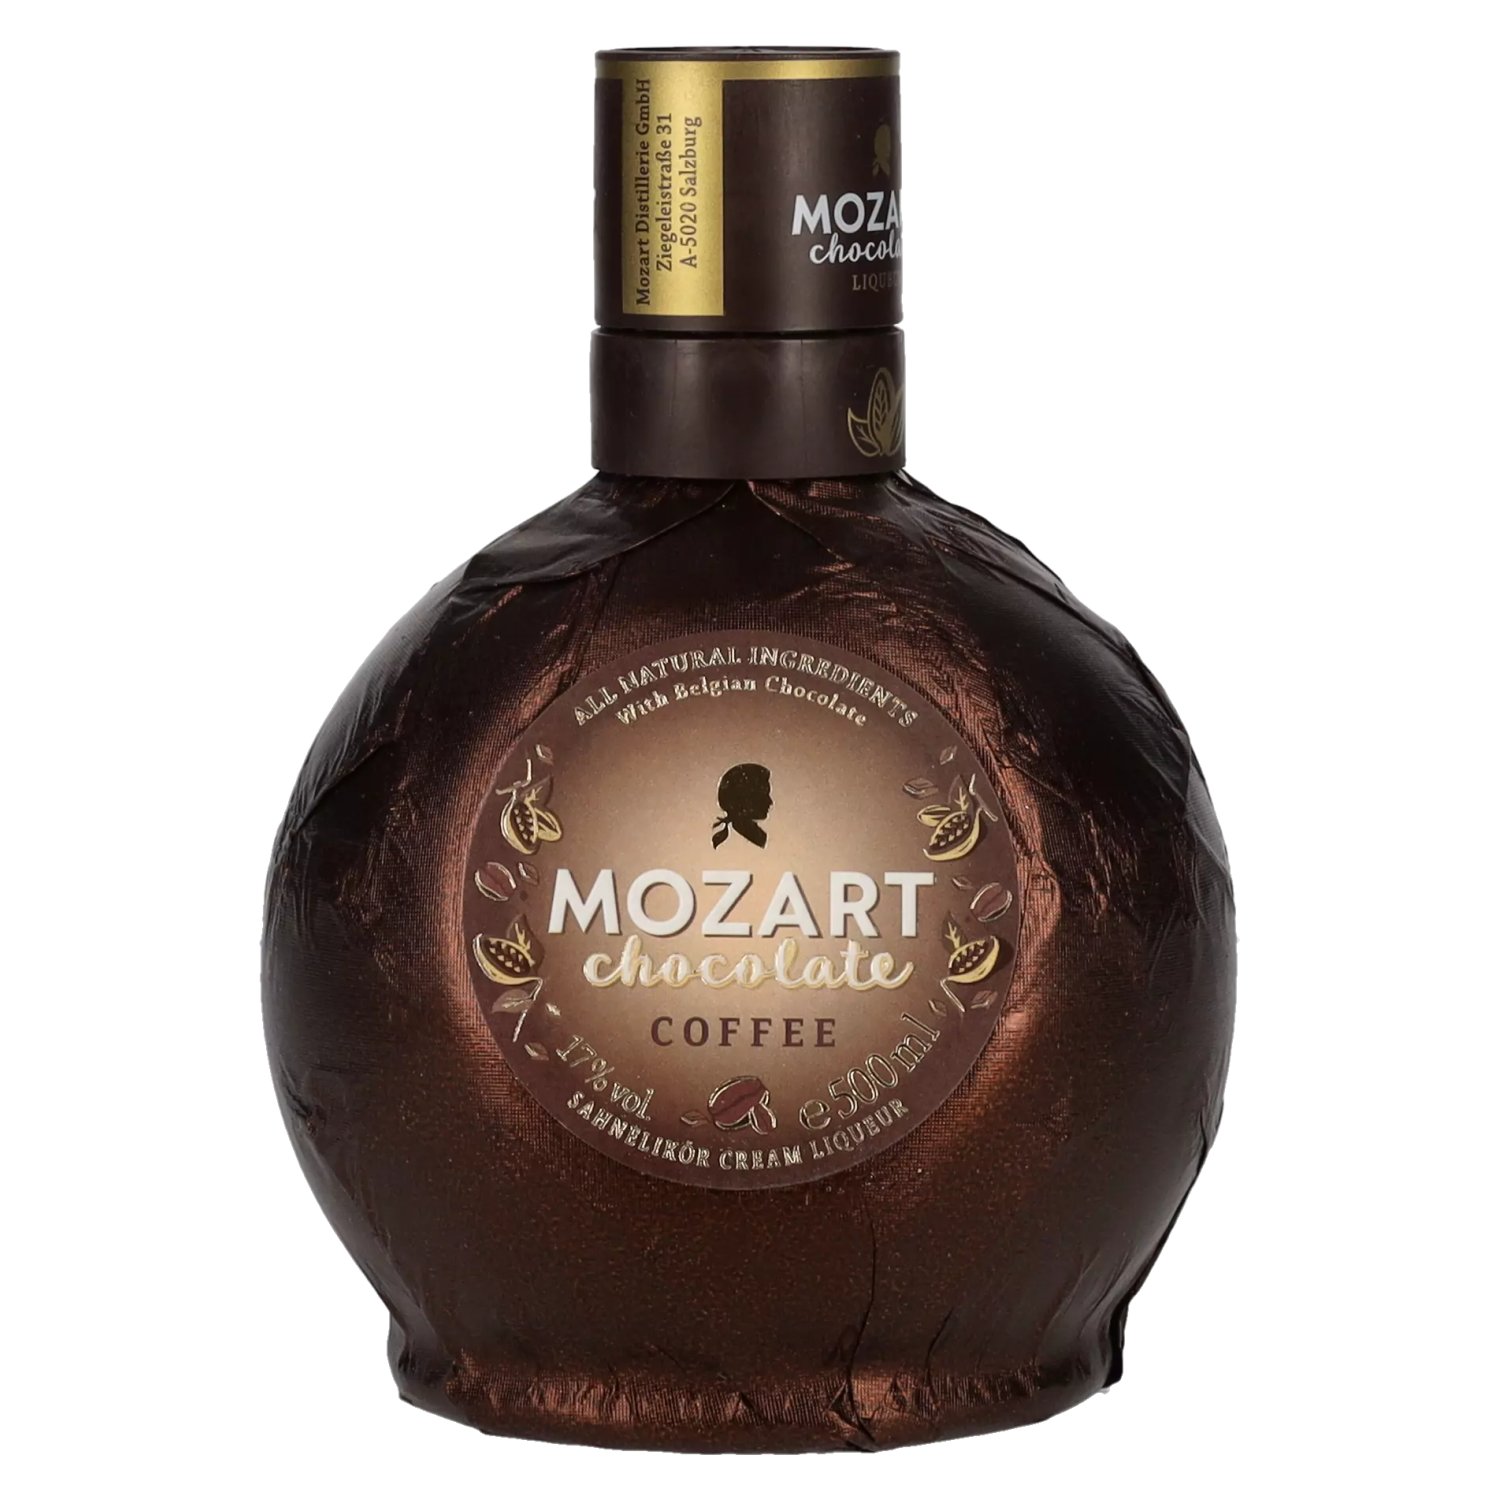 Mozart Chocolate Coffee 17% Vol. - delicando 0,5l